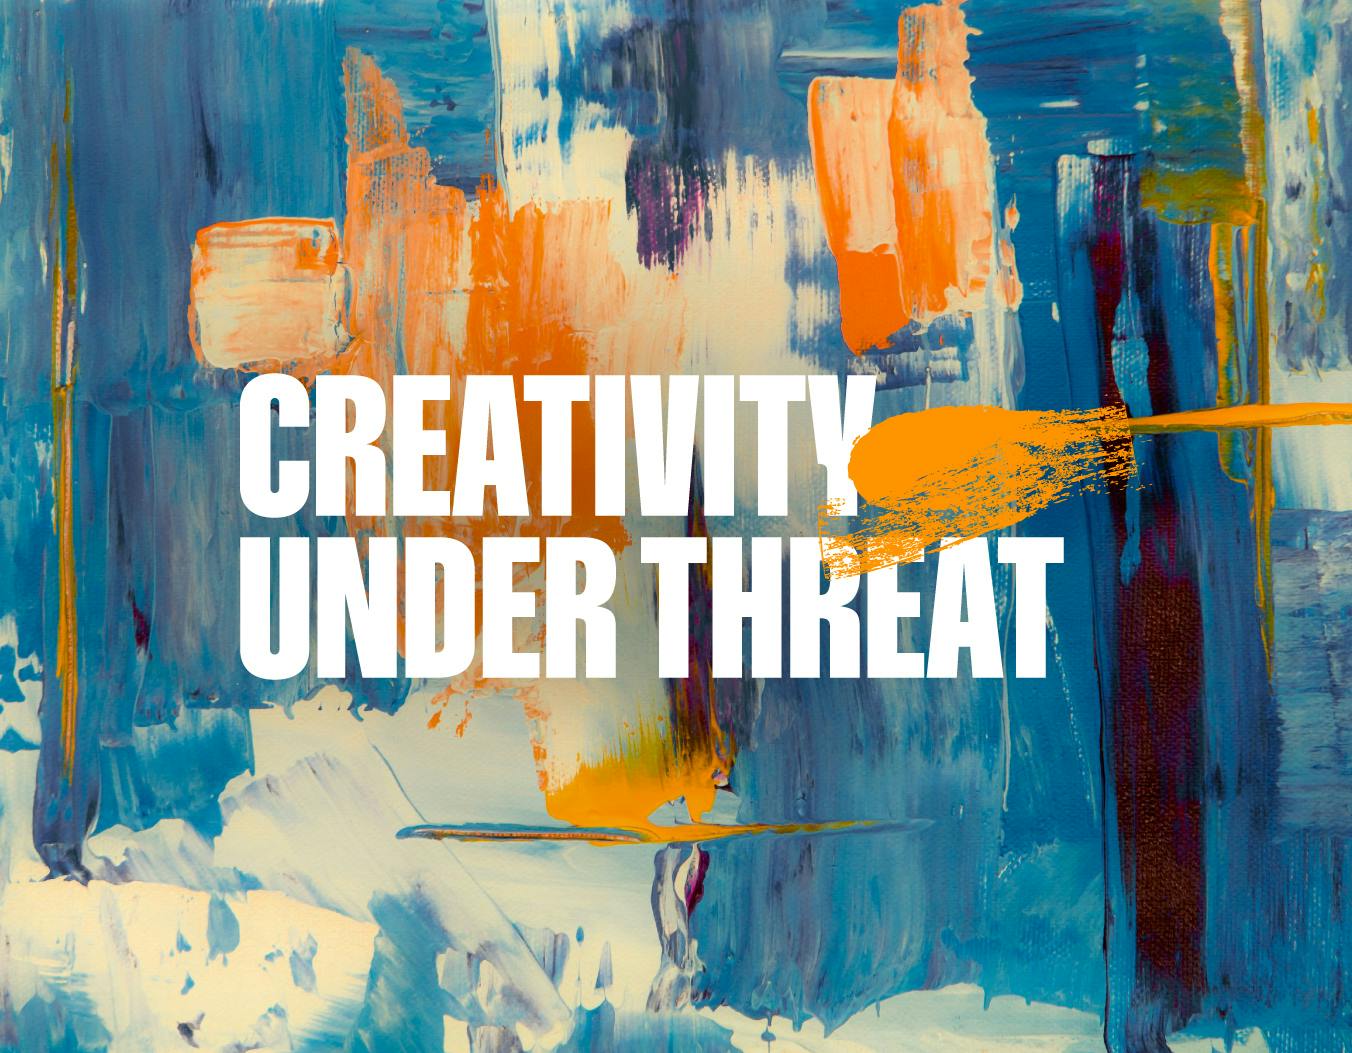 Creativity Under Threat image